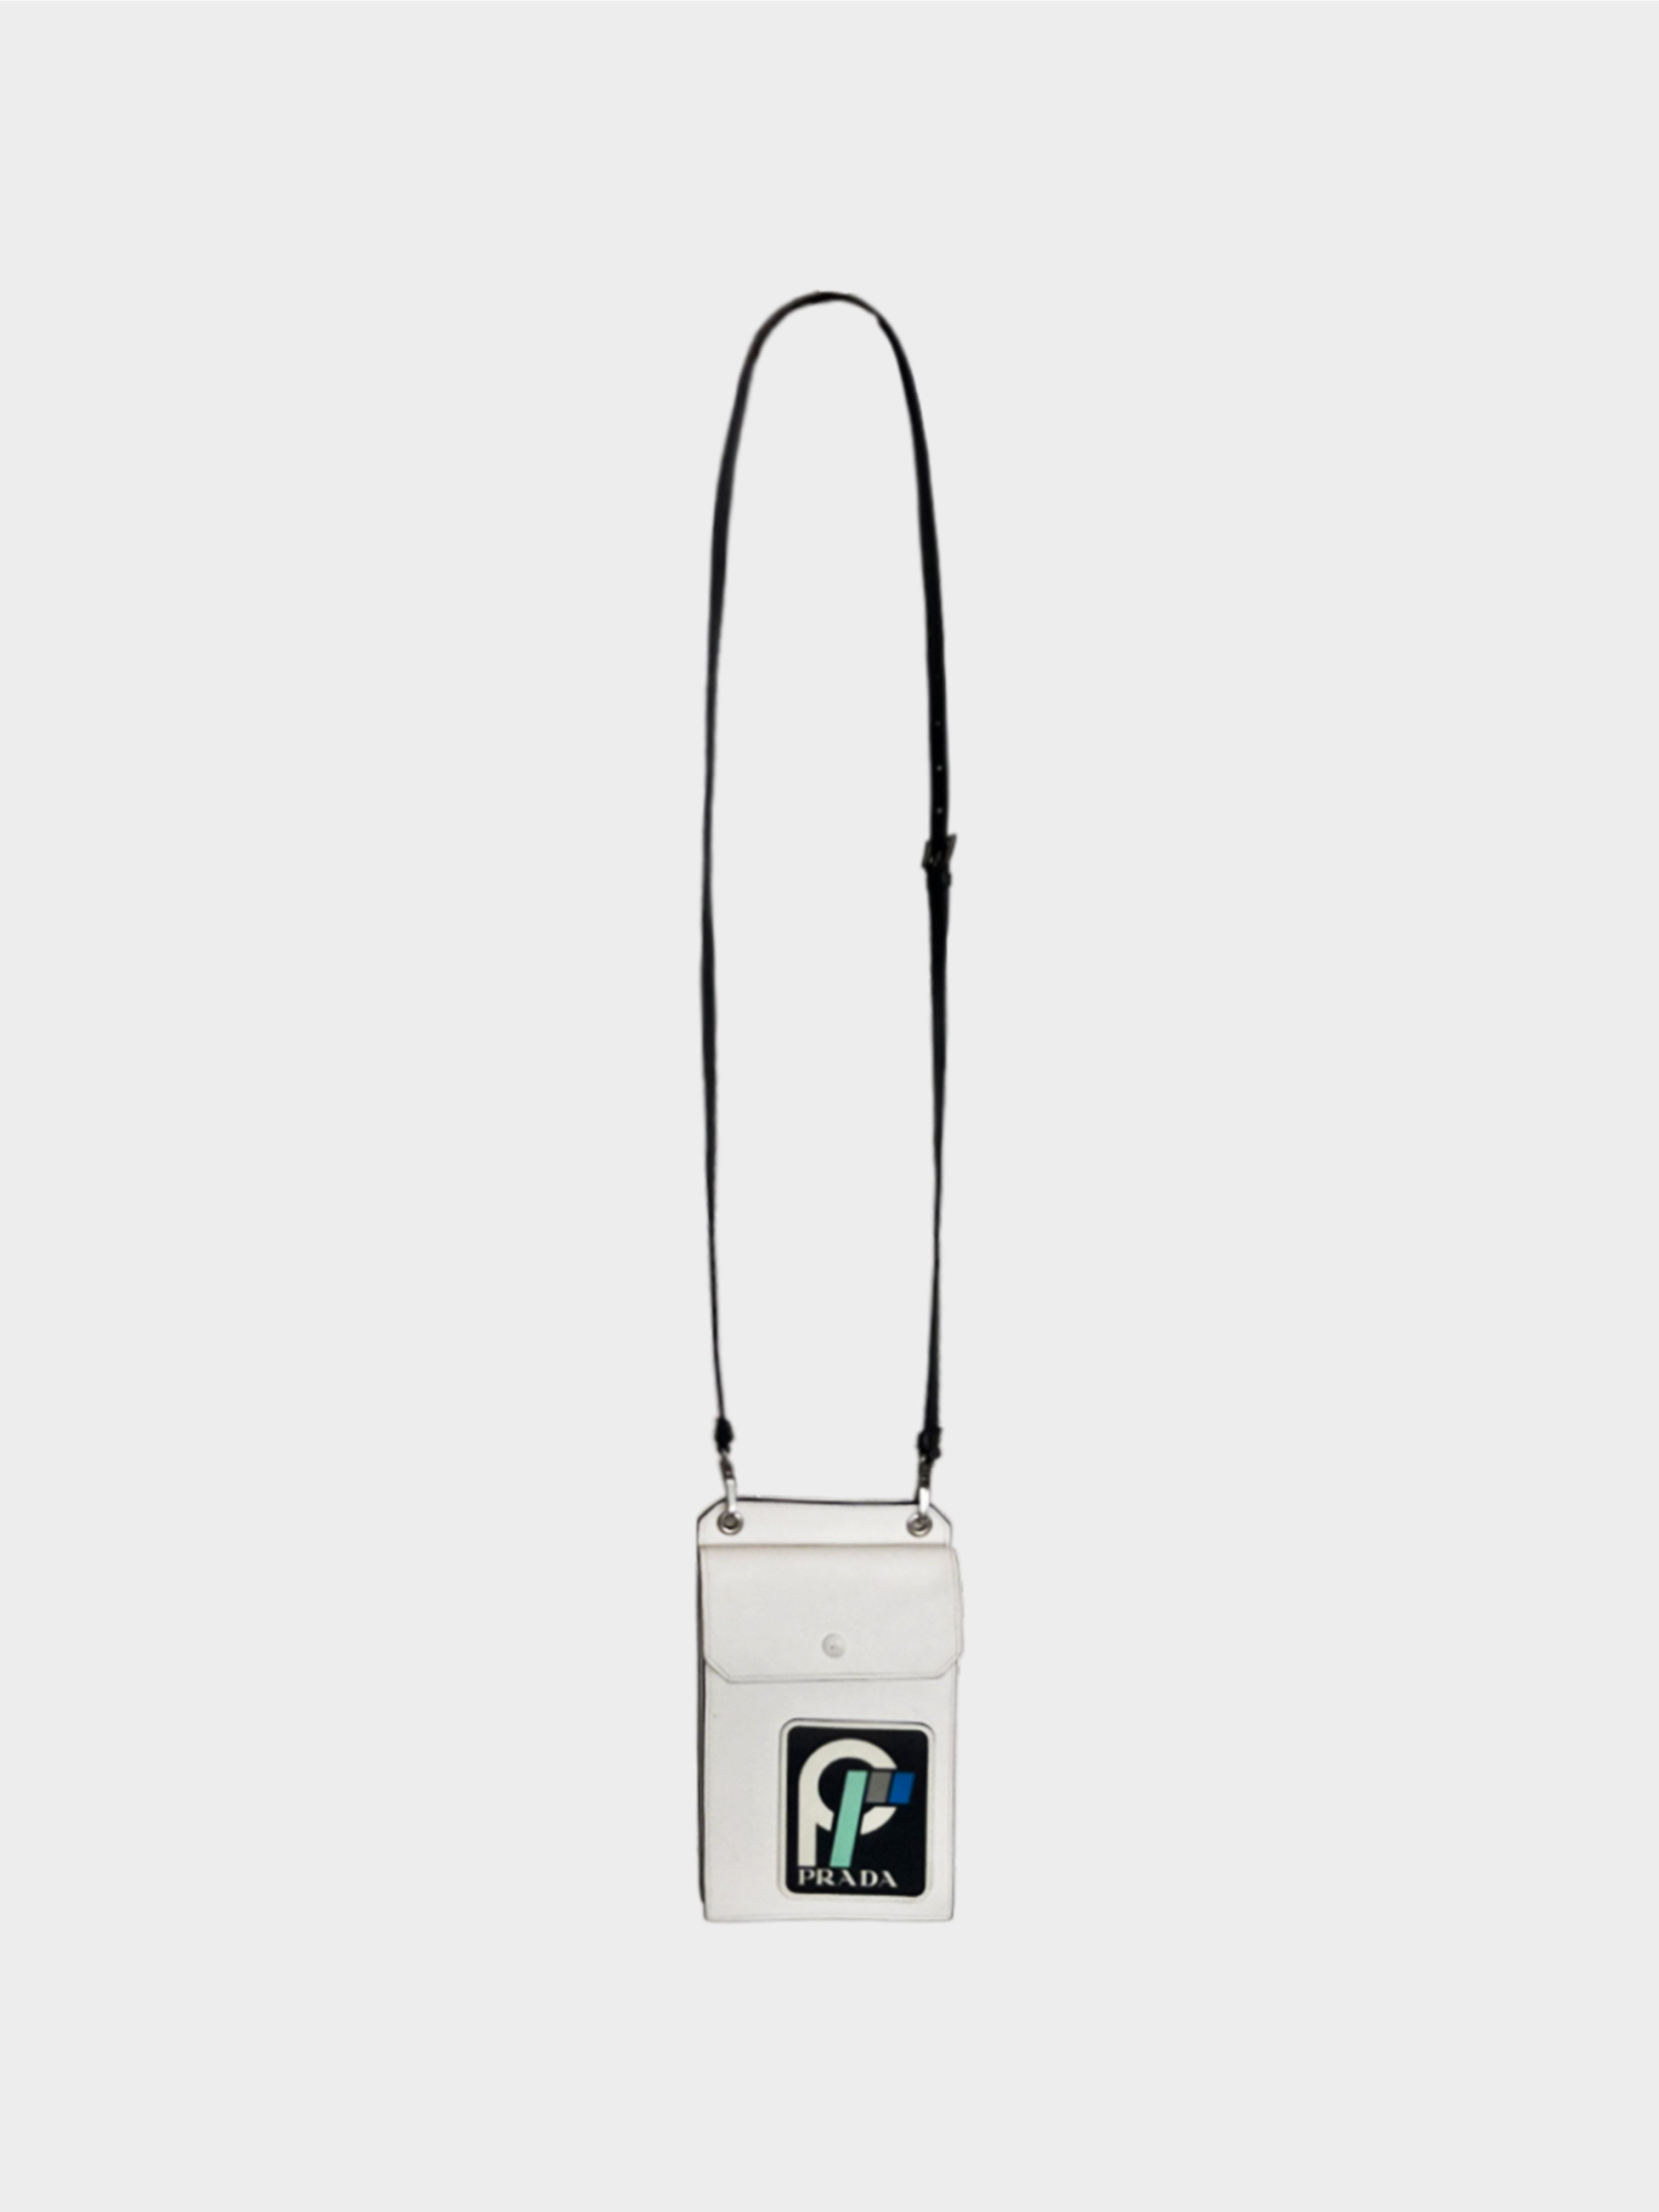 Prada 2018 Saffiano Patch Phone Case Bag